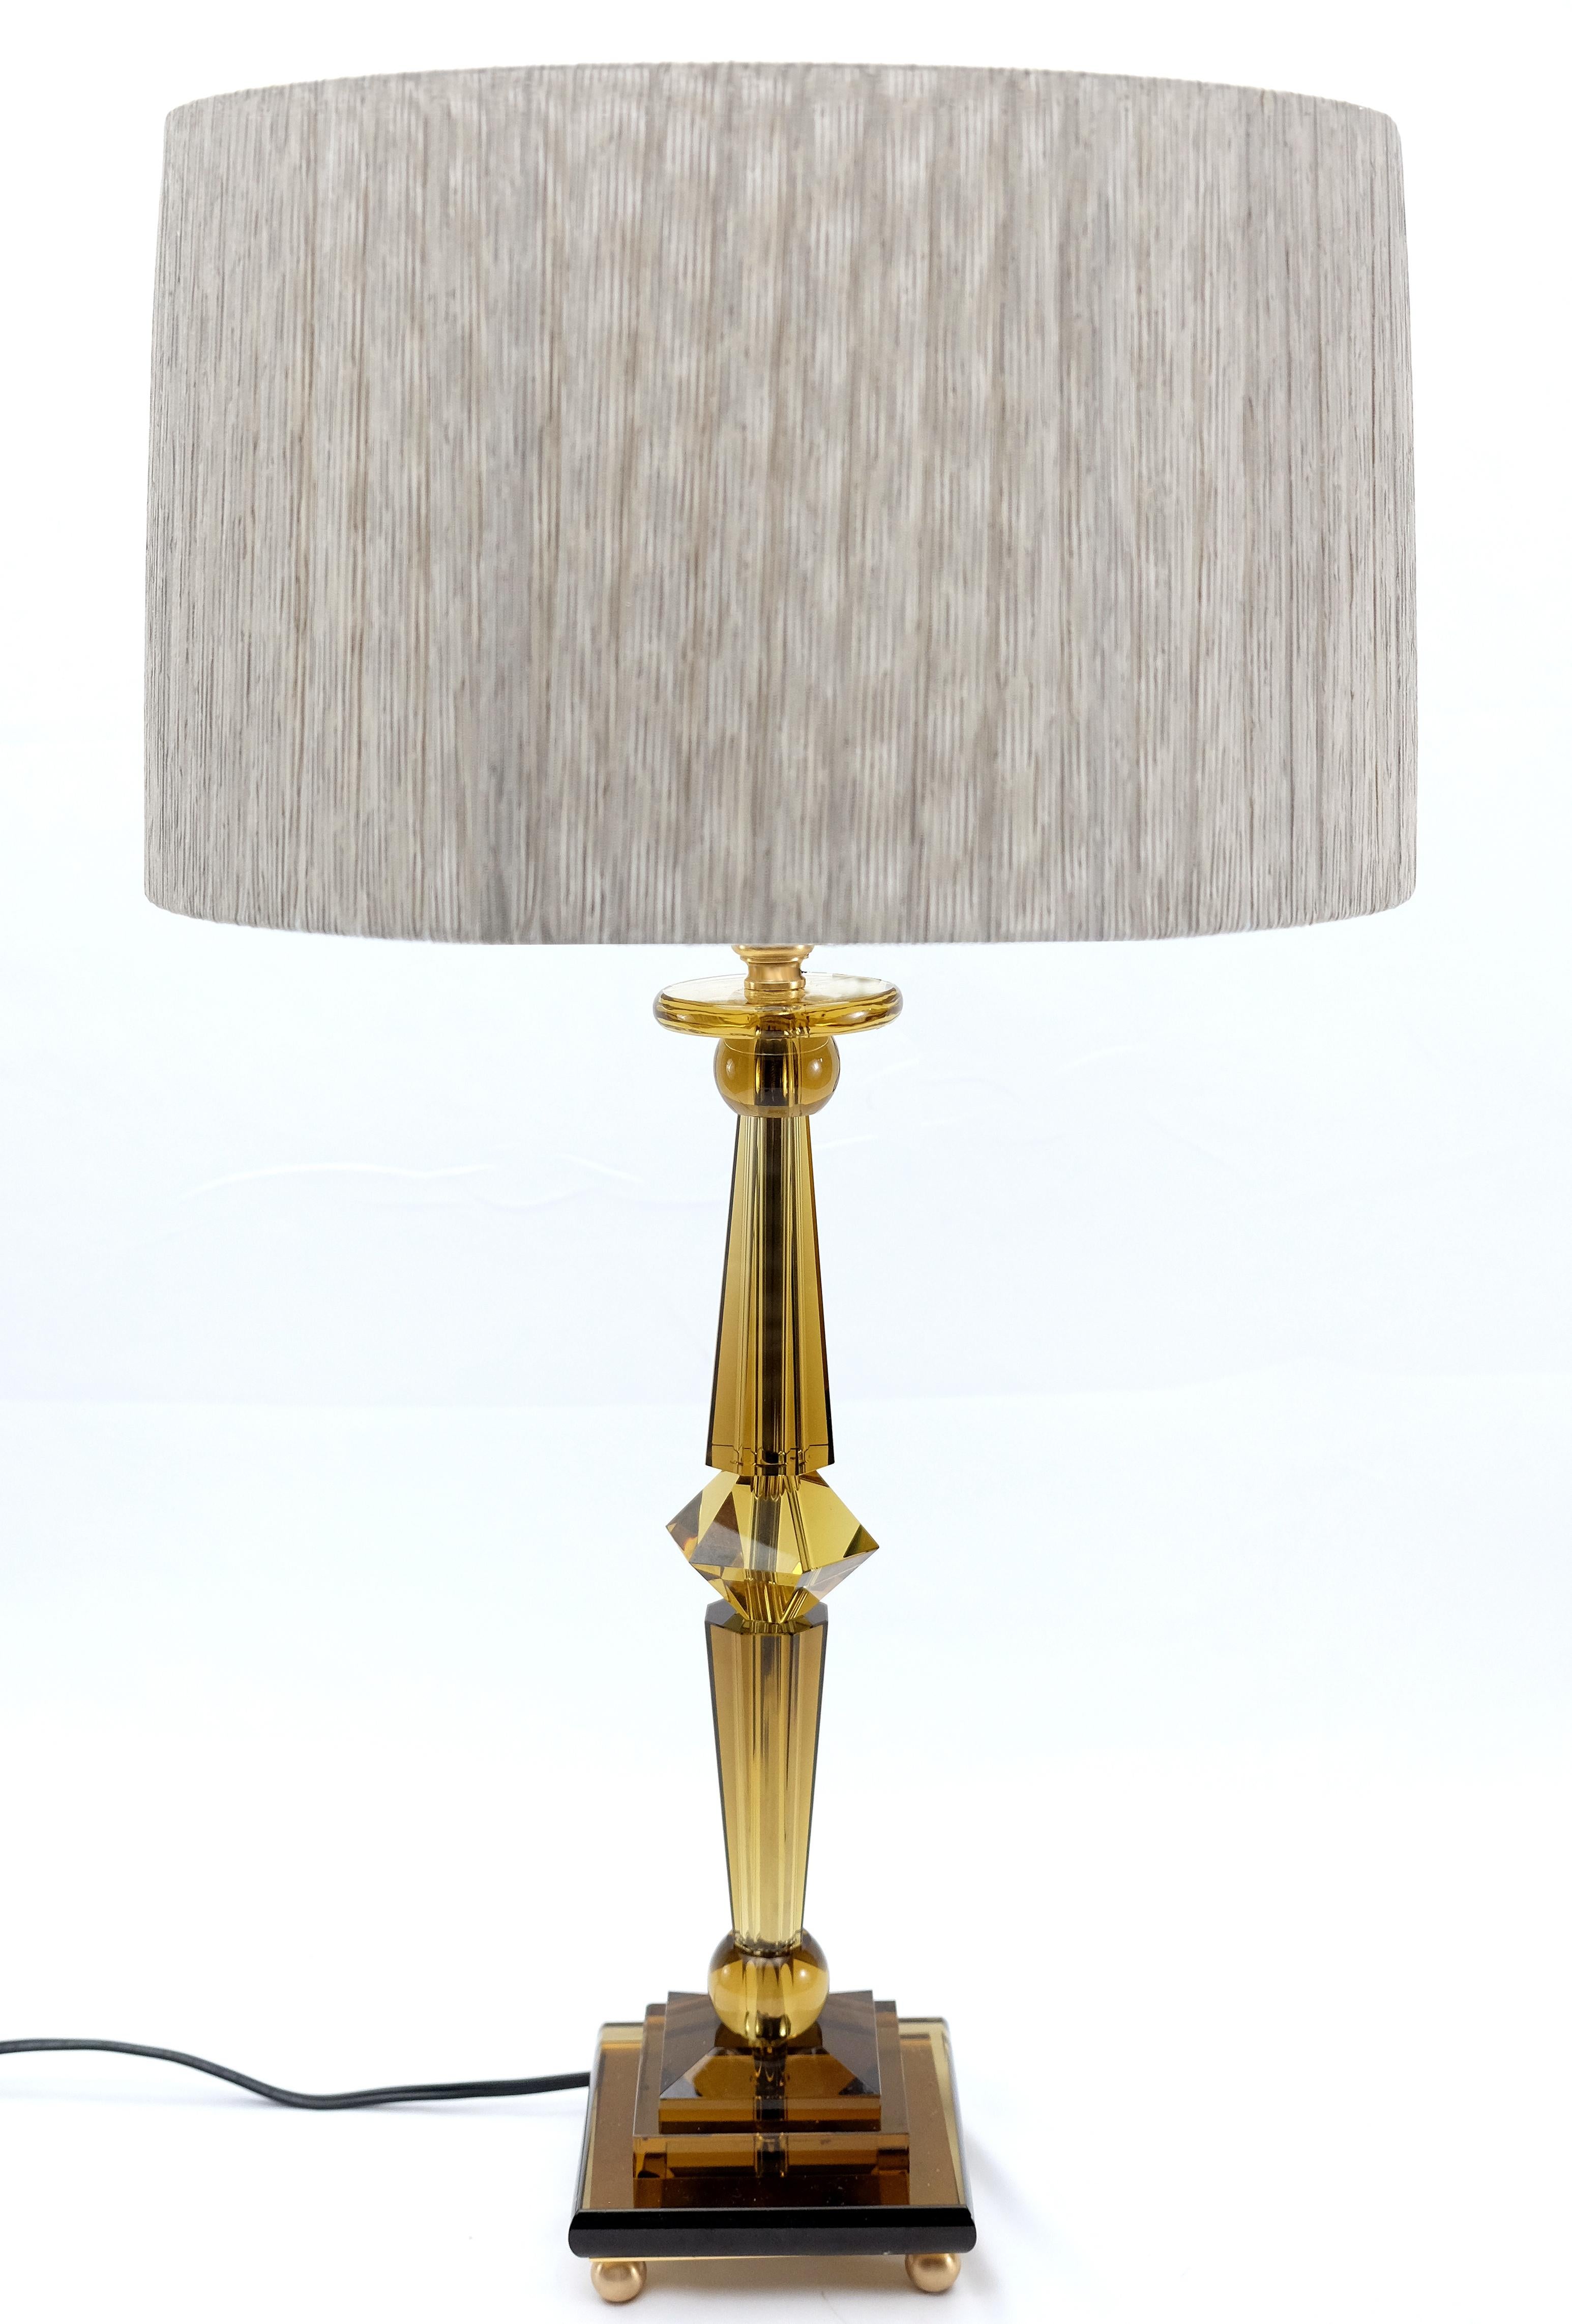 Attilio Amato for Laudarte Srl Prisma Big Table Lamp, Pair Disponible

Nous proposons à la vente une superbe lampe de table en cristal ambré 